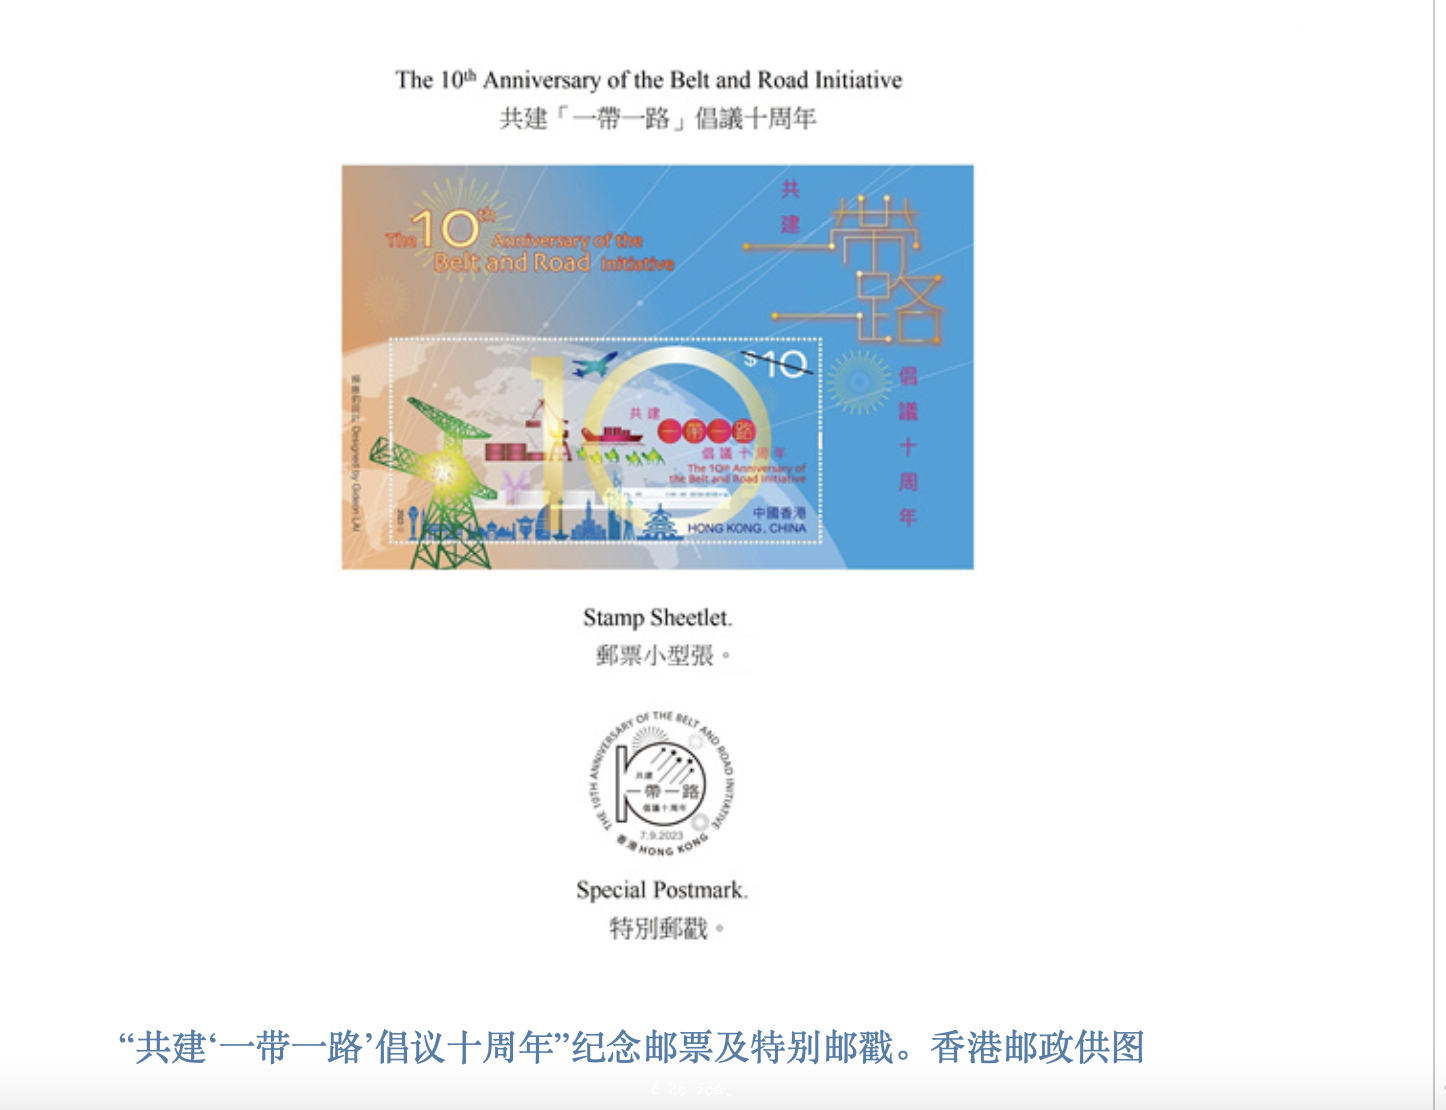 香港郵政將發行「共建『一帶一路』倡議十周年」紀念郵票